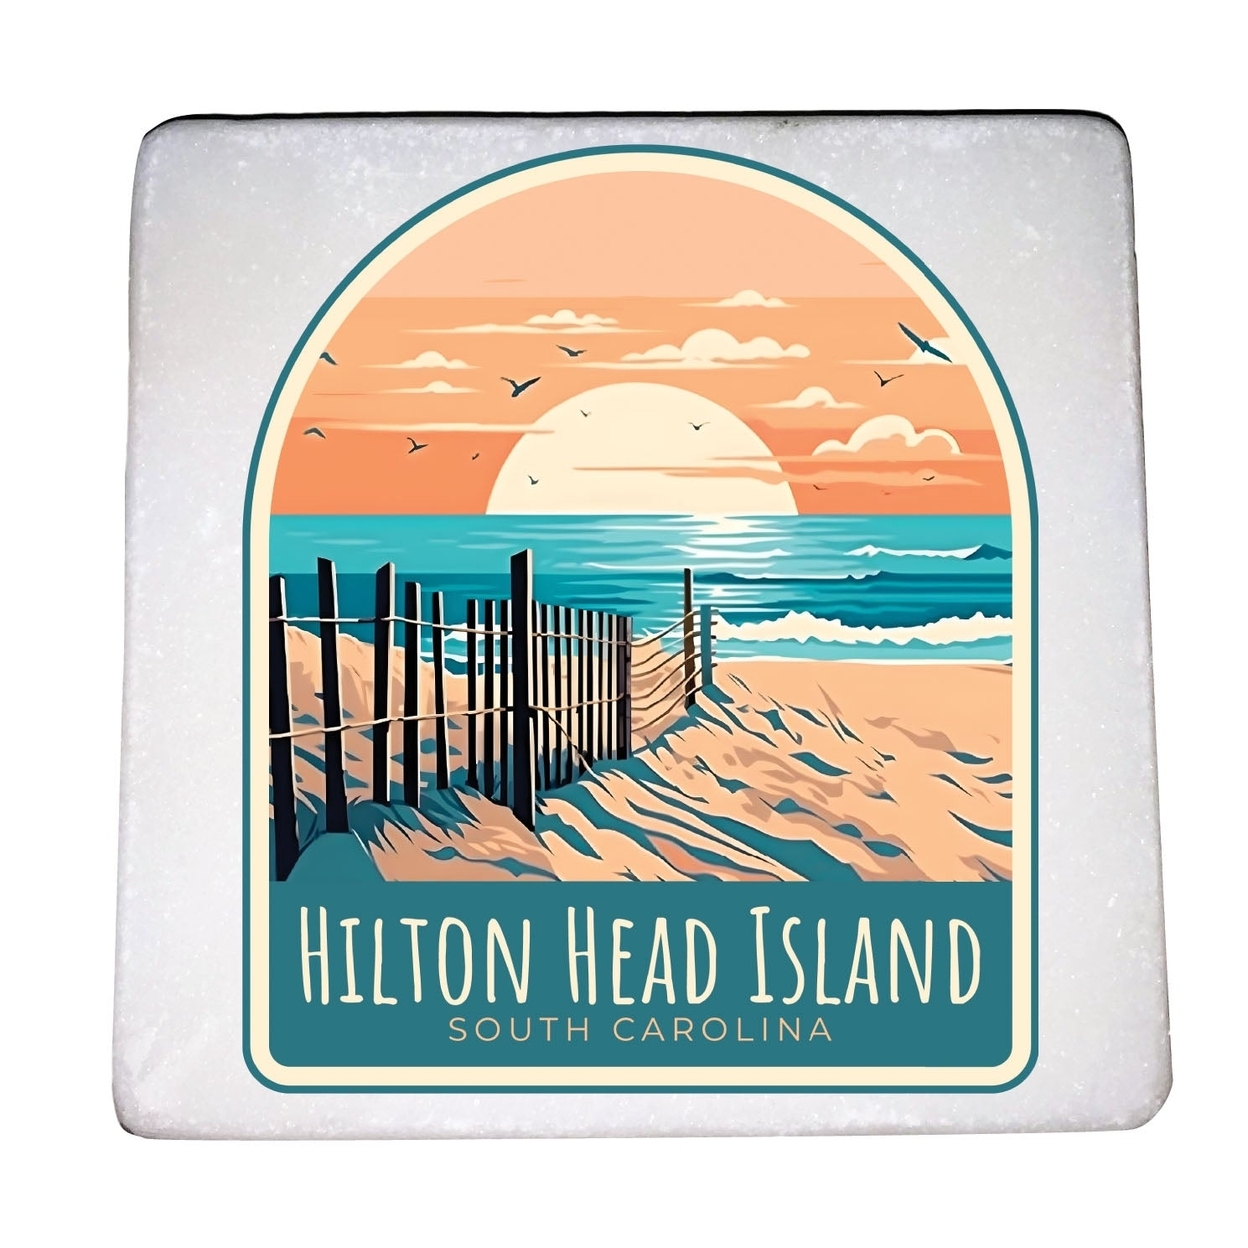 Hilton Head Island Design C Souvenir 4x4-Inch Coaster Marble 4 Pack